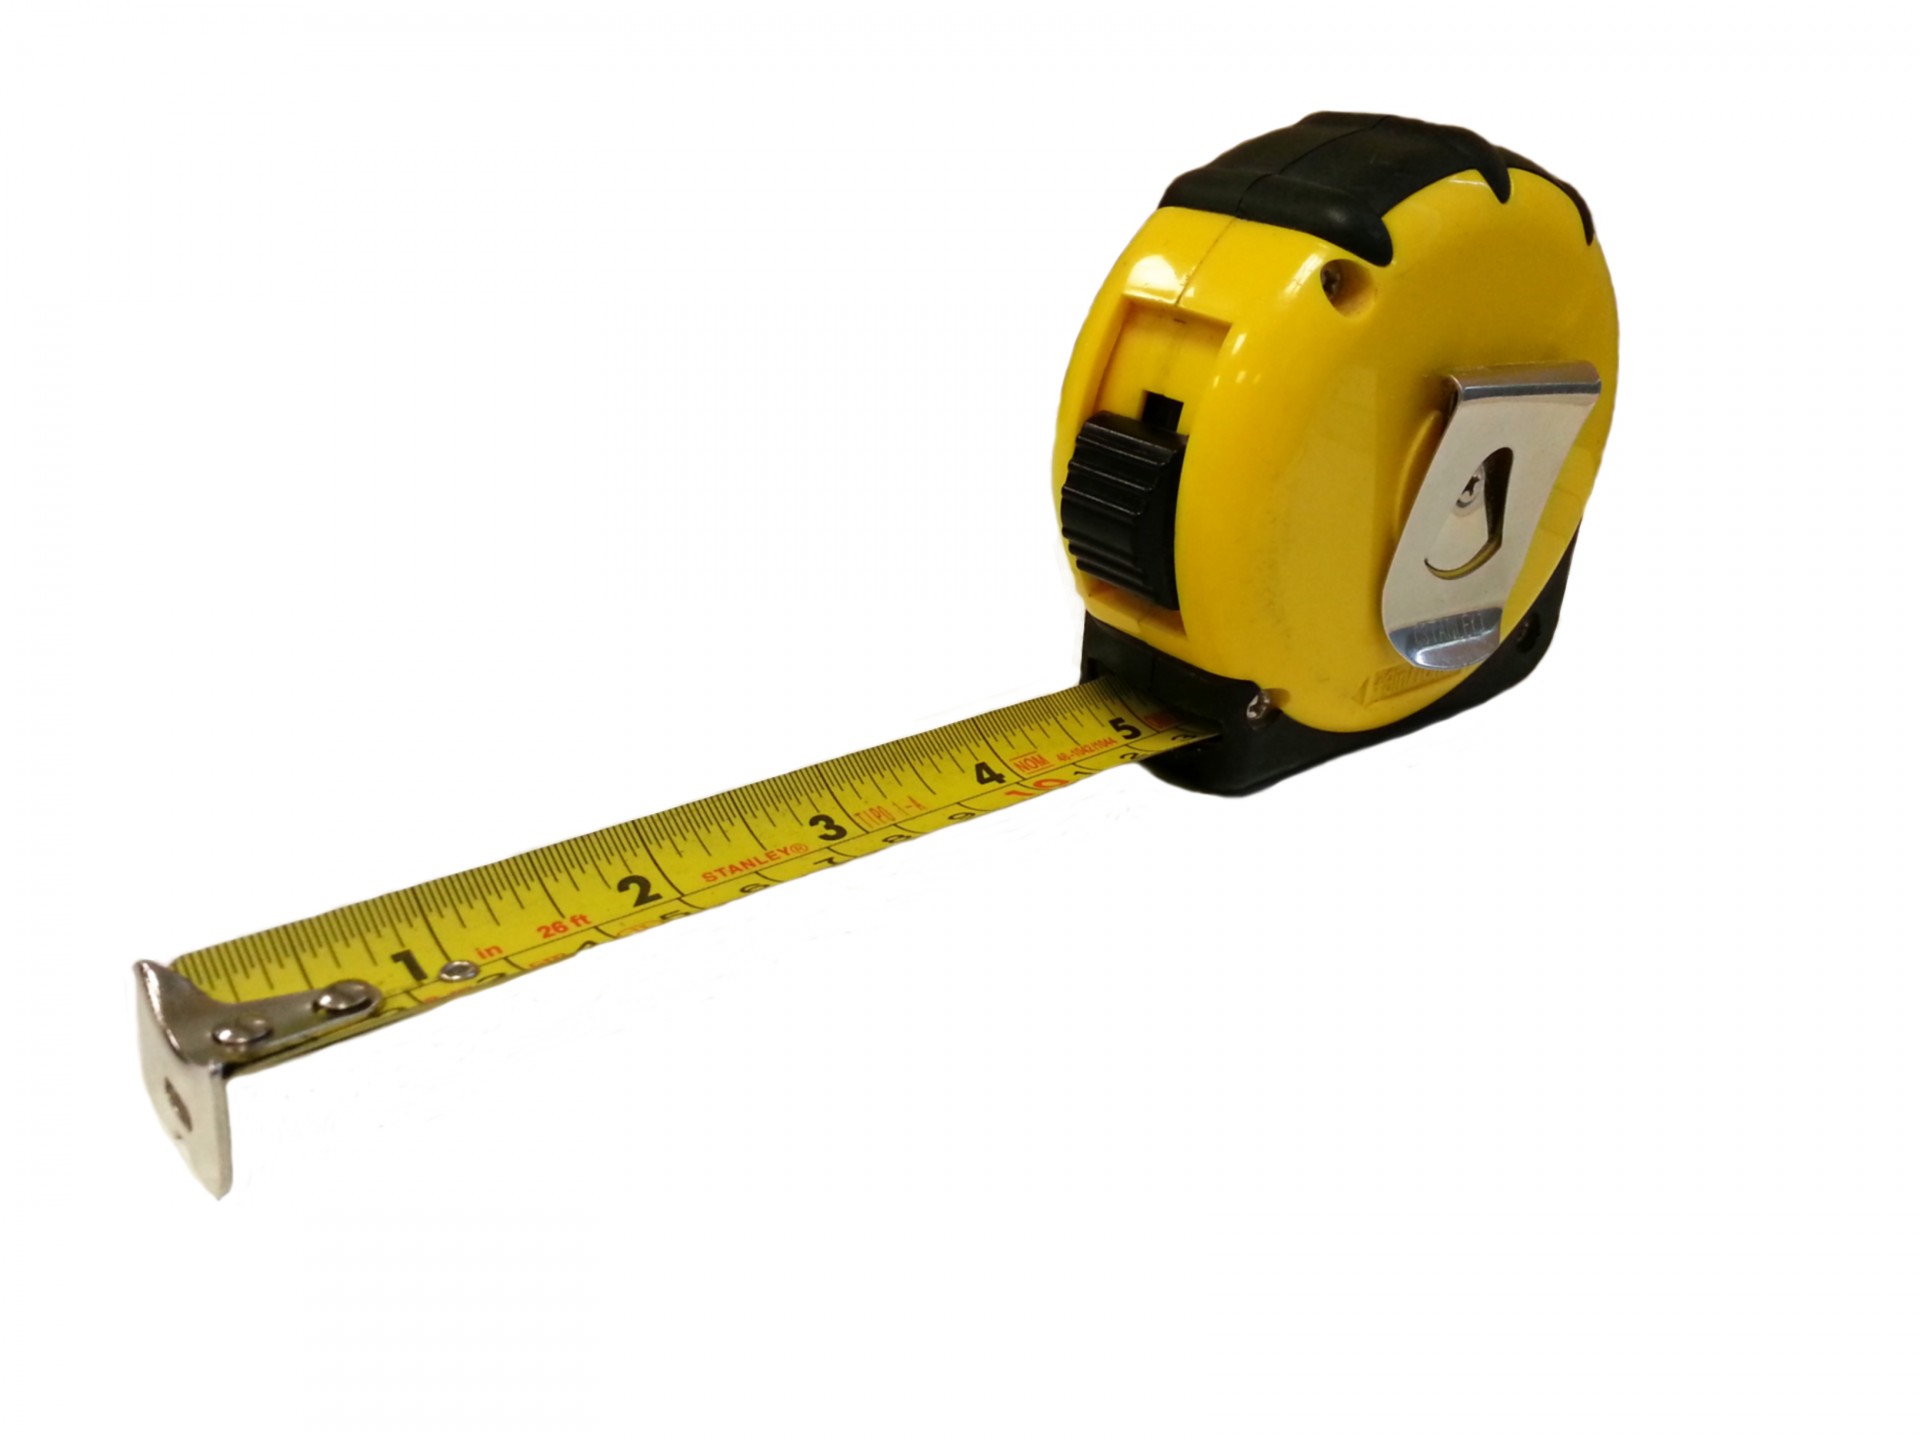 measure inch metering free photo